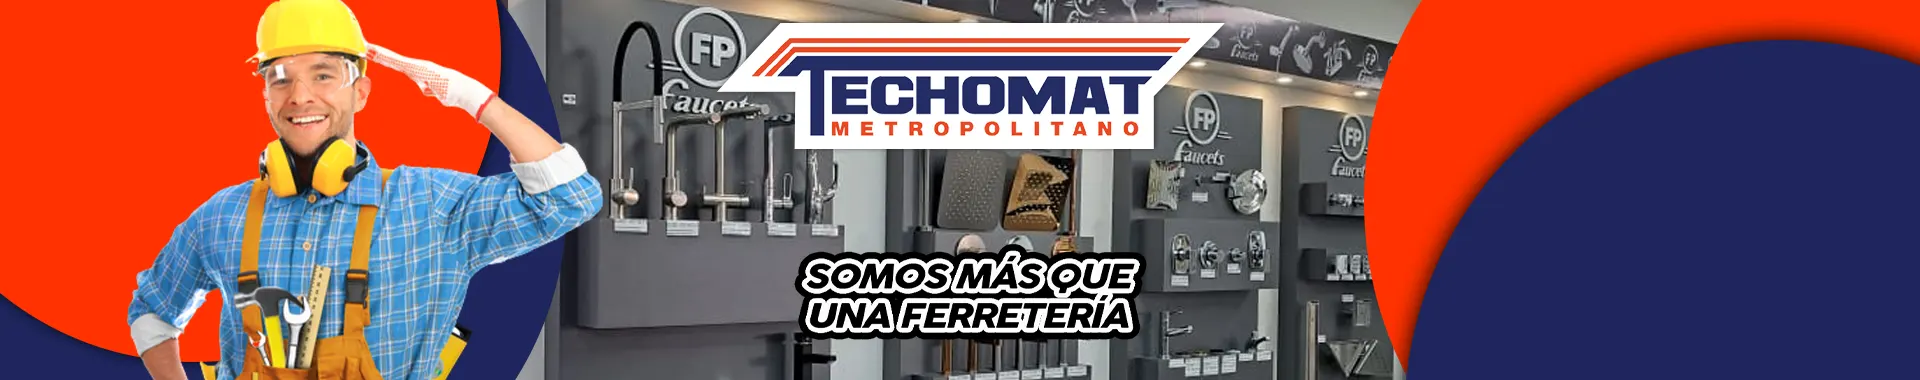 Imagen 1 del perfil de Techomat Metropolitano CA